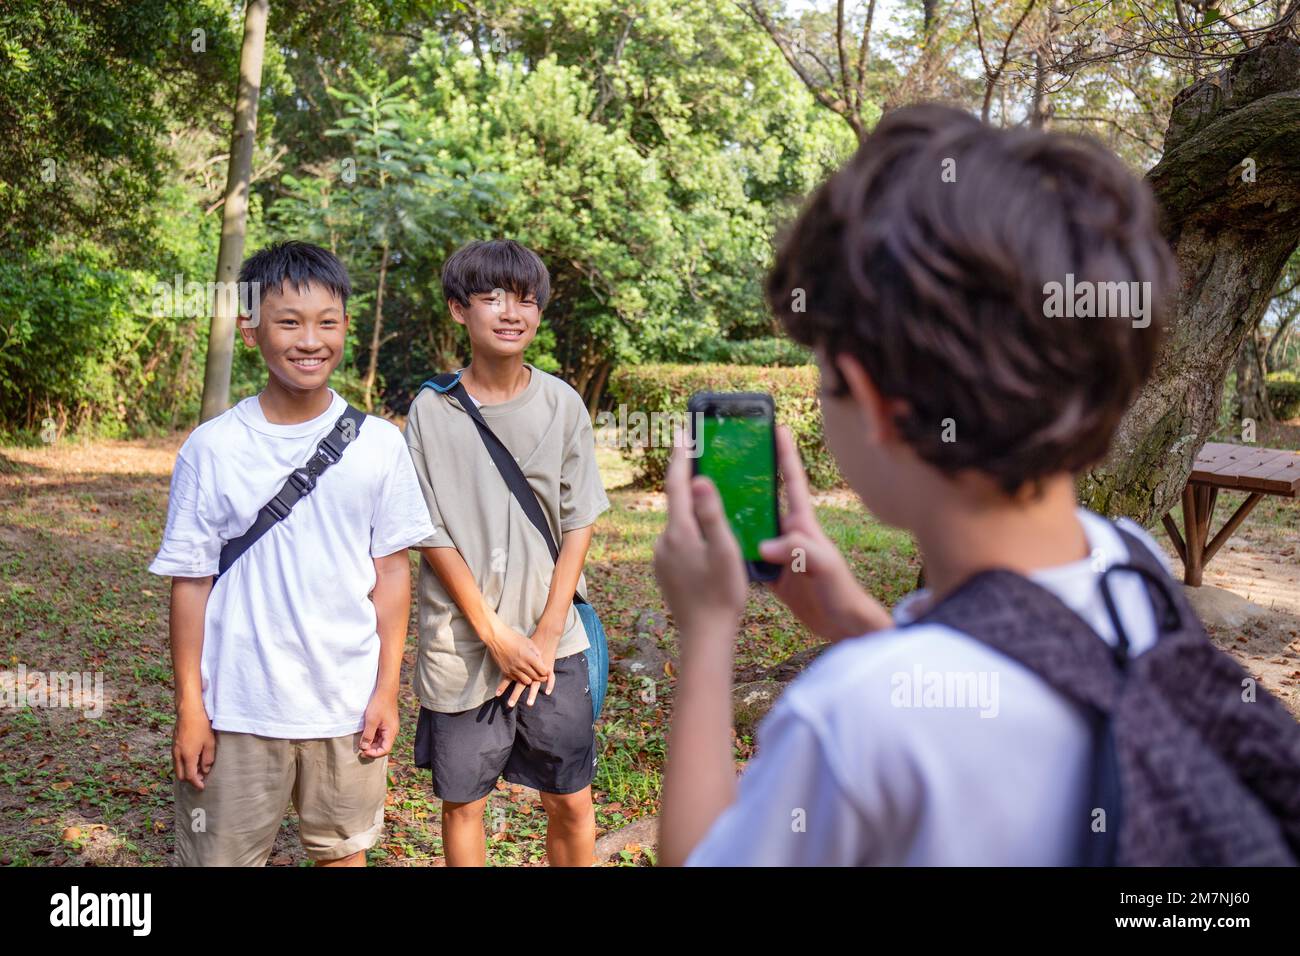 Un niño con un teléfono móvil tomando una foto de dos niños de 13 años uno al lado del otro, al aire libre en un parque en verano. Foto de stock